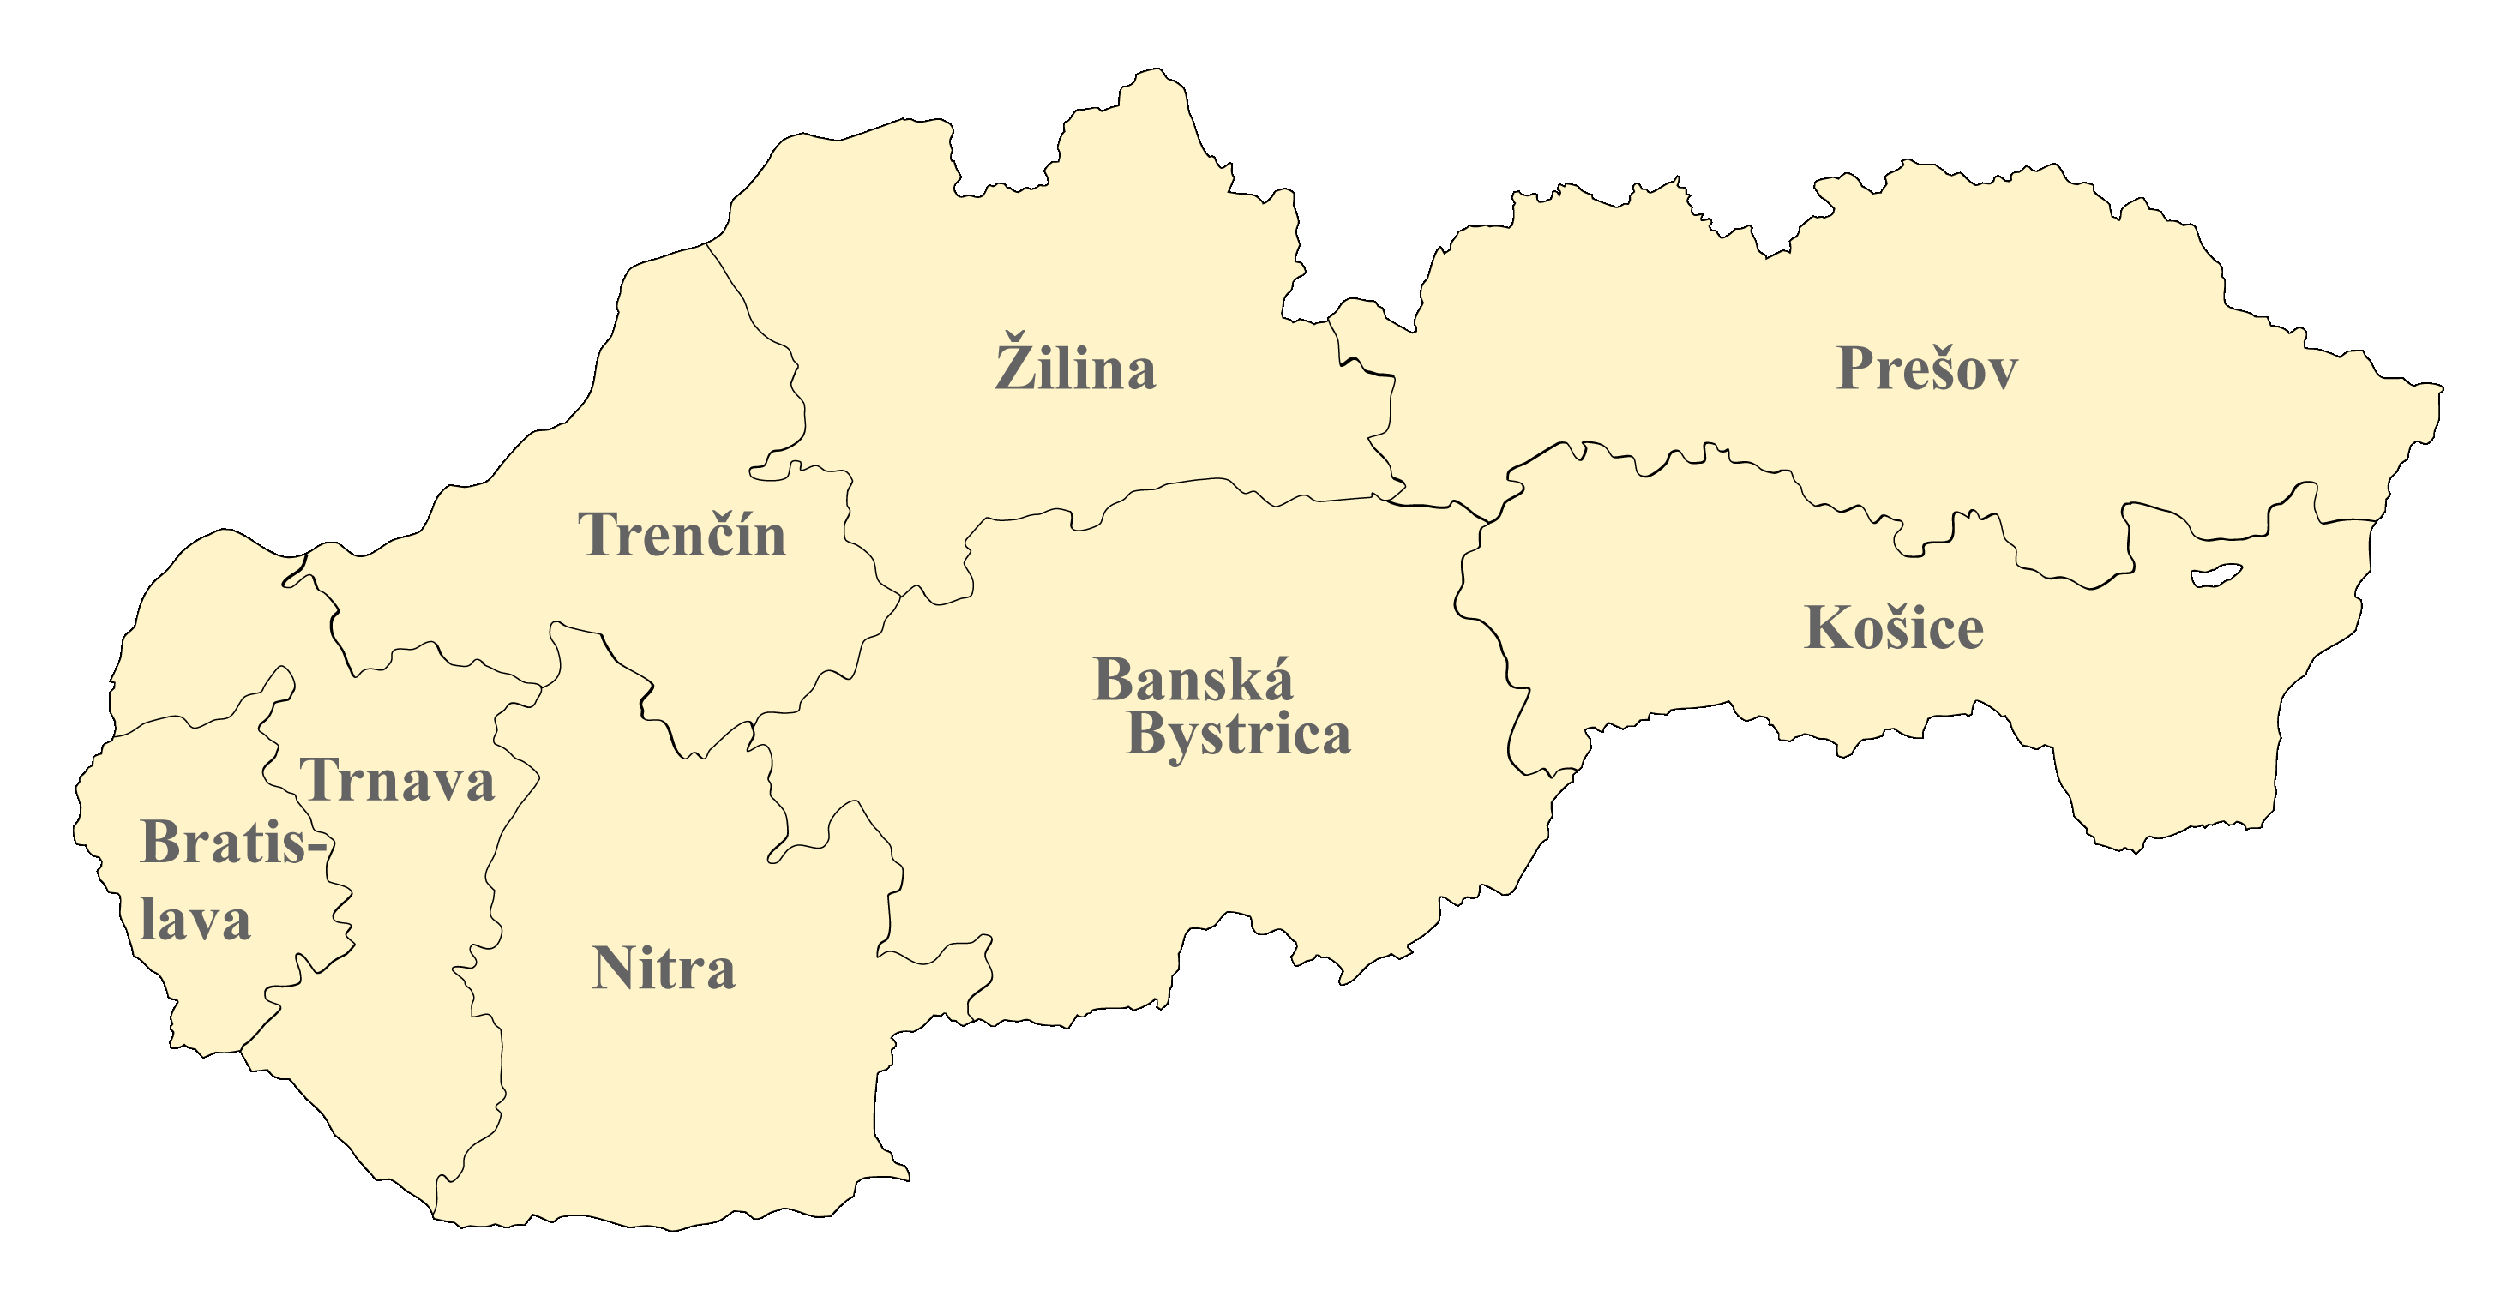 Slowakei Karte nach Regionen gegliedert